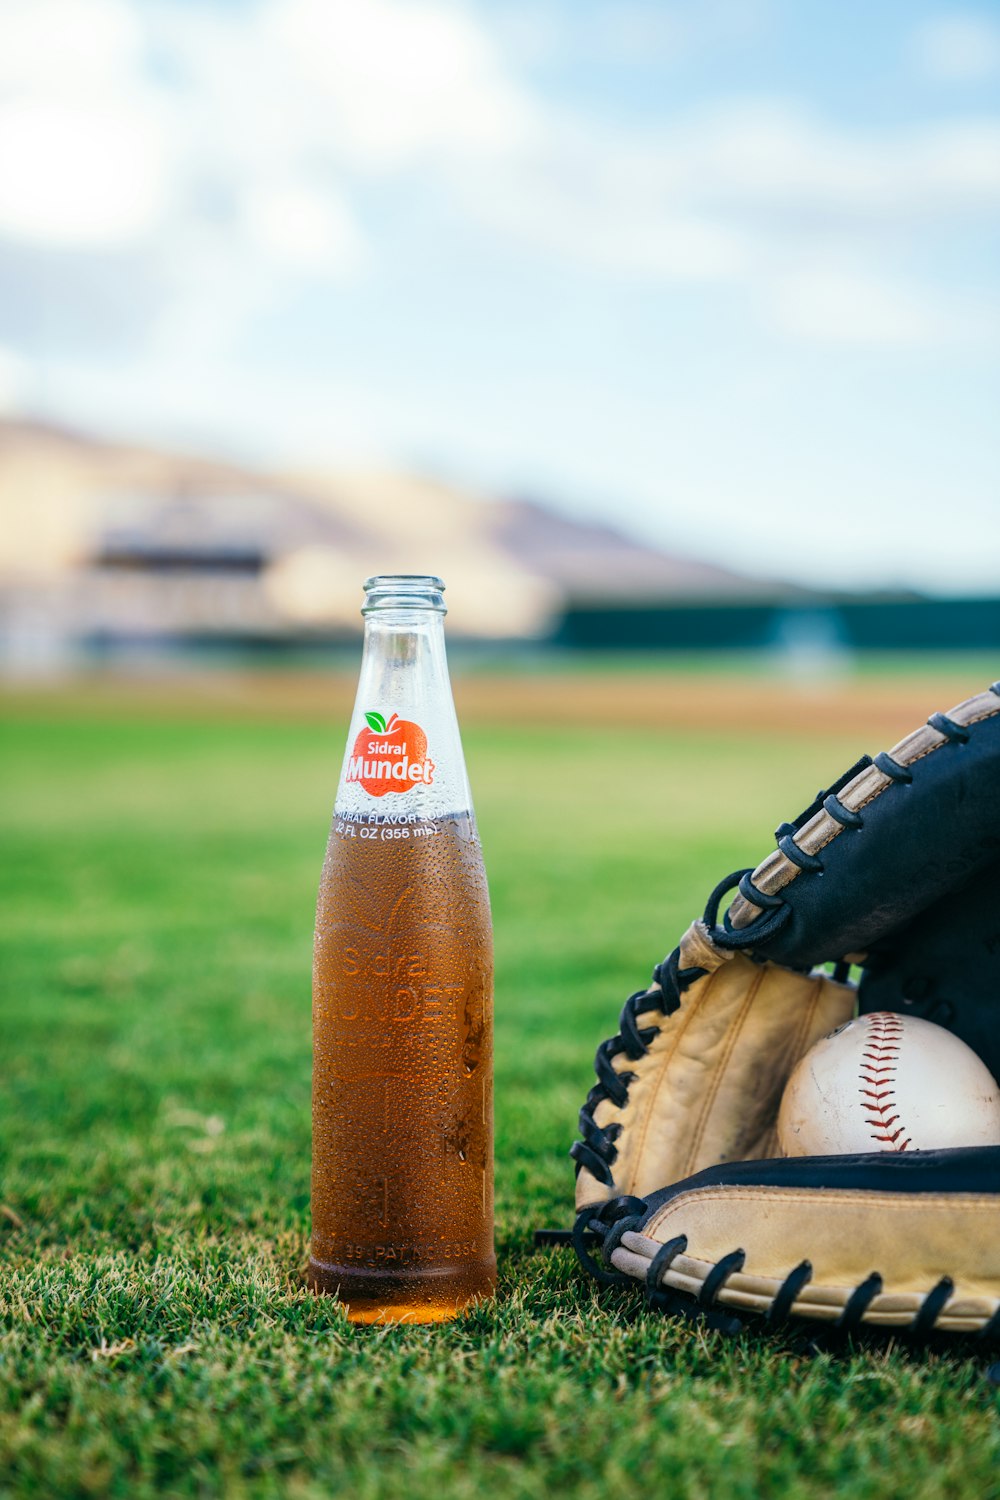 a bottle of apple cider next to a baseball mitt